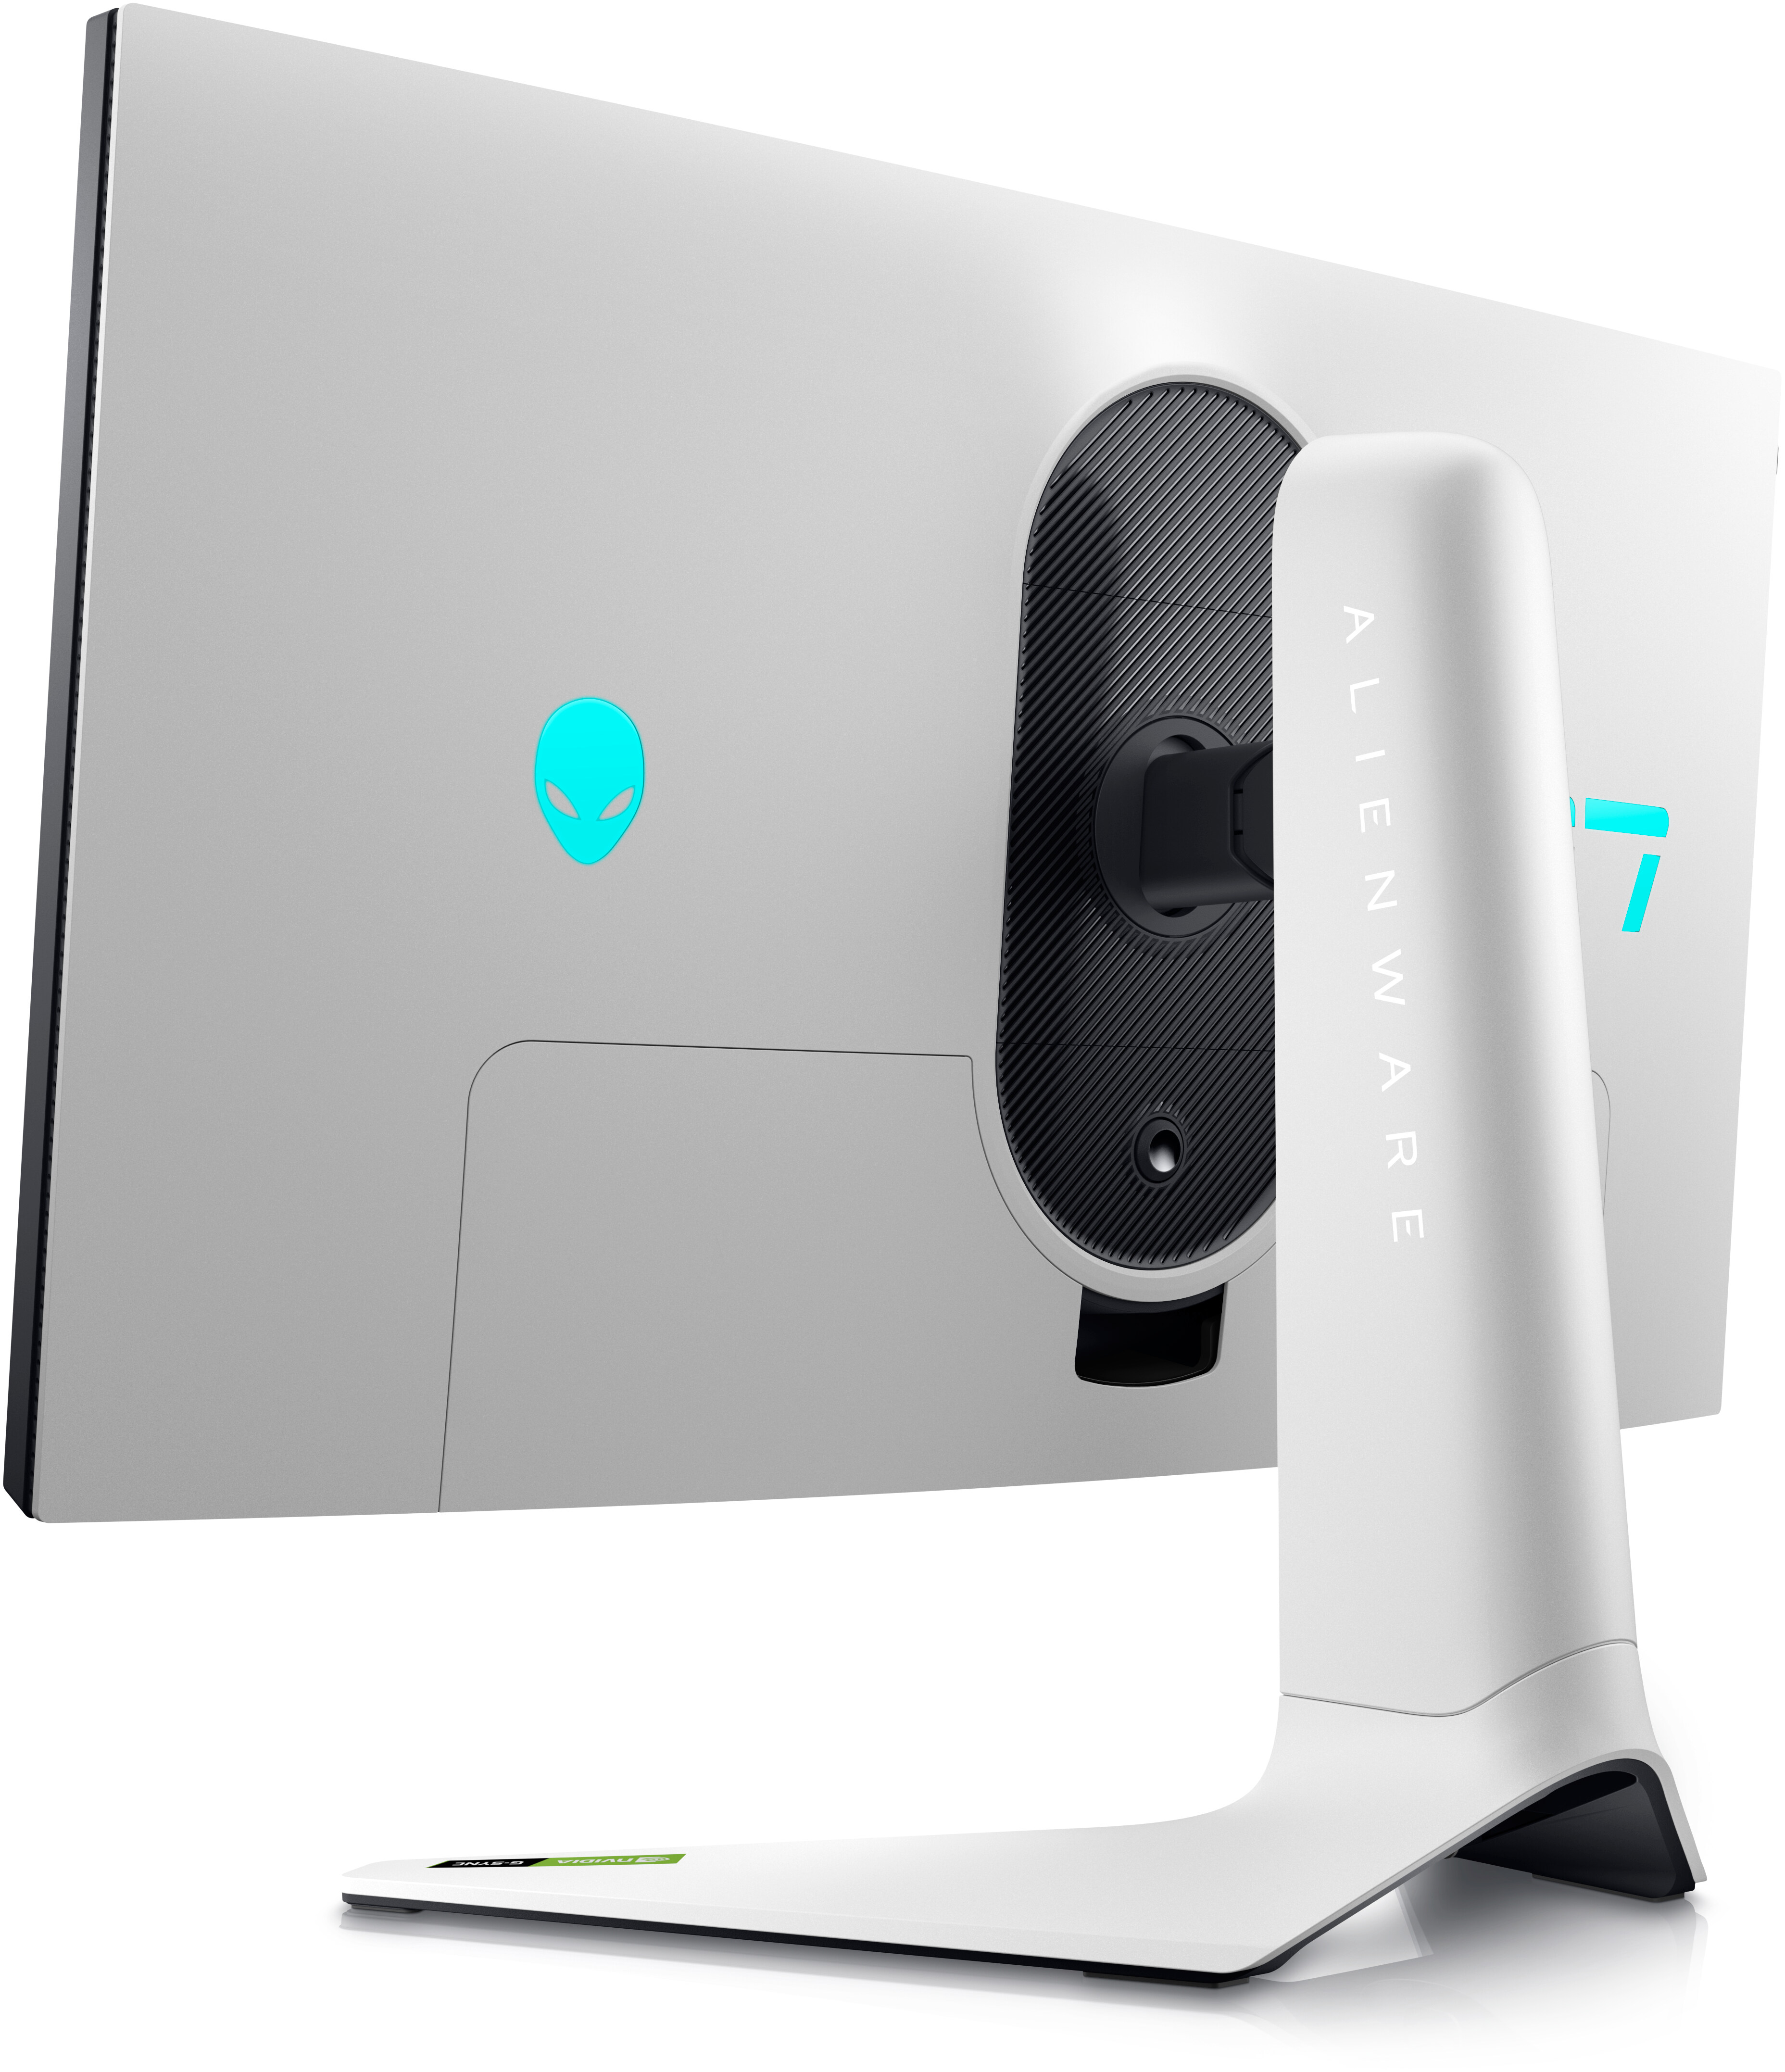 L'impressionnant écran Alienware 25 en 240 Hz tombe à 279 € grâce